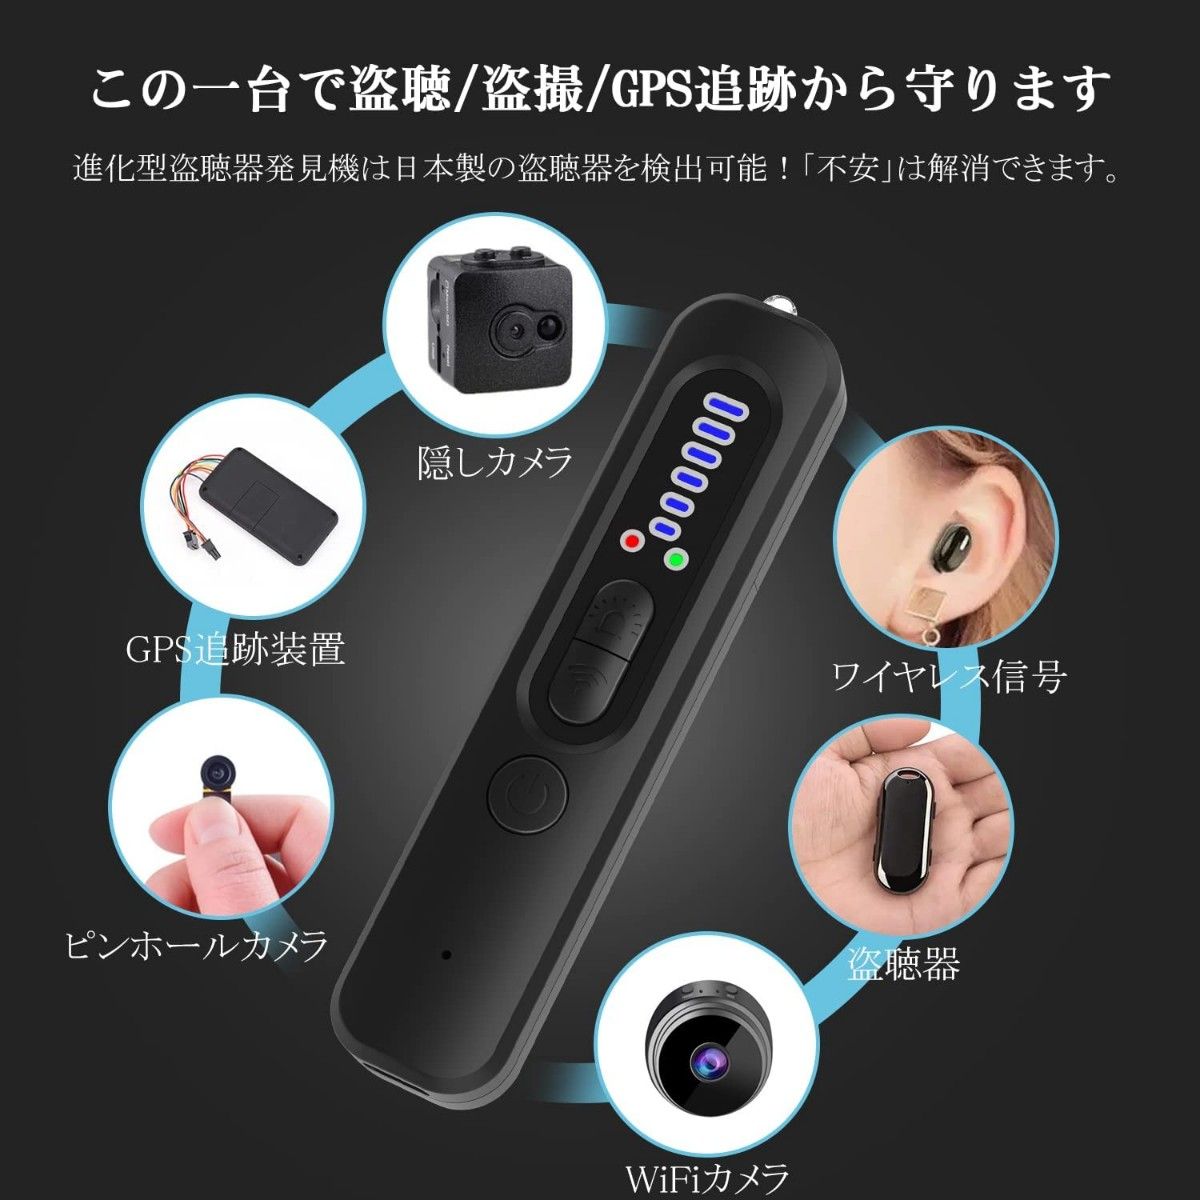 《盗聴器発見機 》小型 盗聴 盗撮器 発見器 25時間連続使用 USB充電  高性能 使いやすい